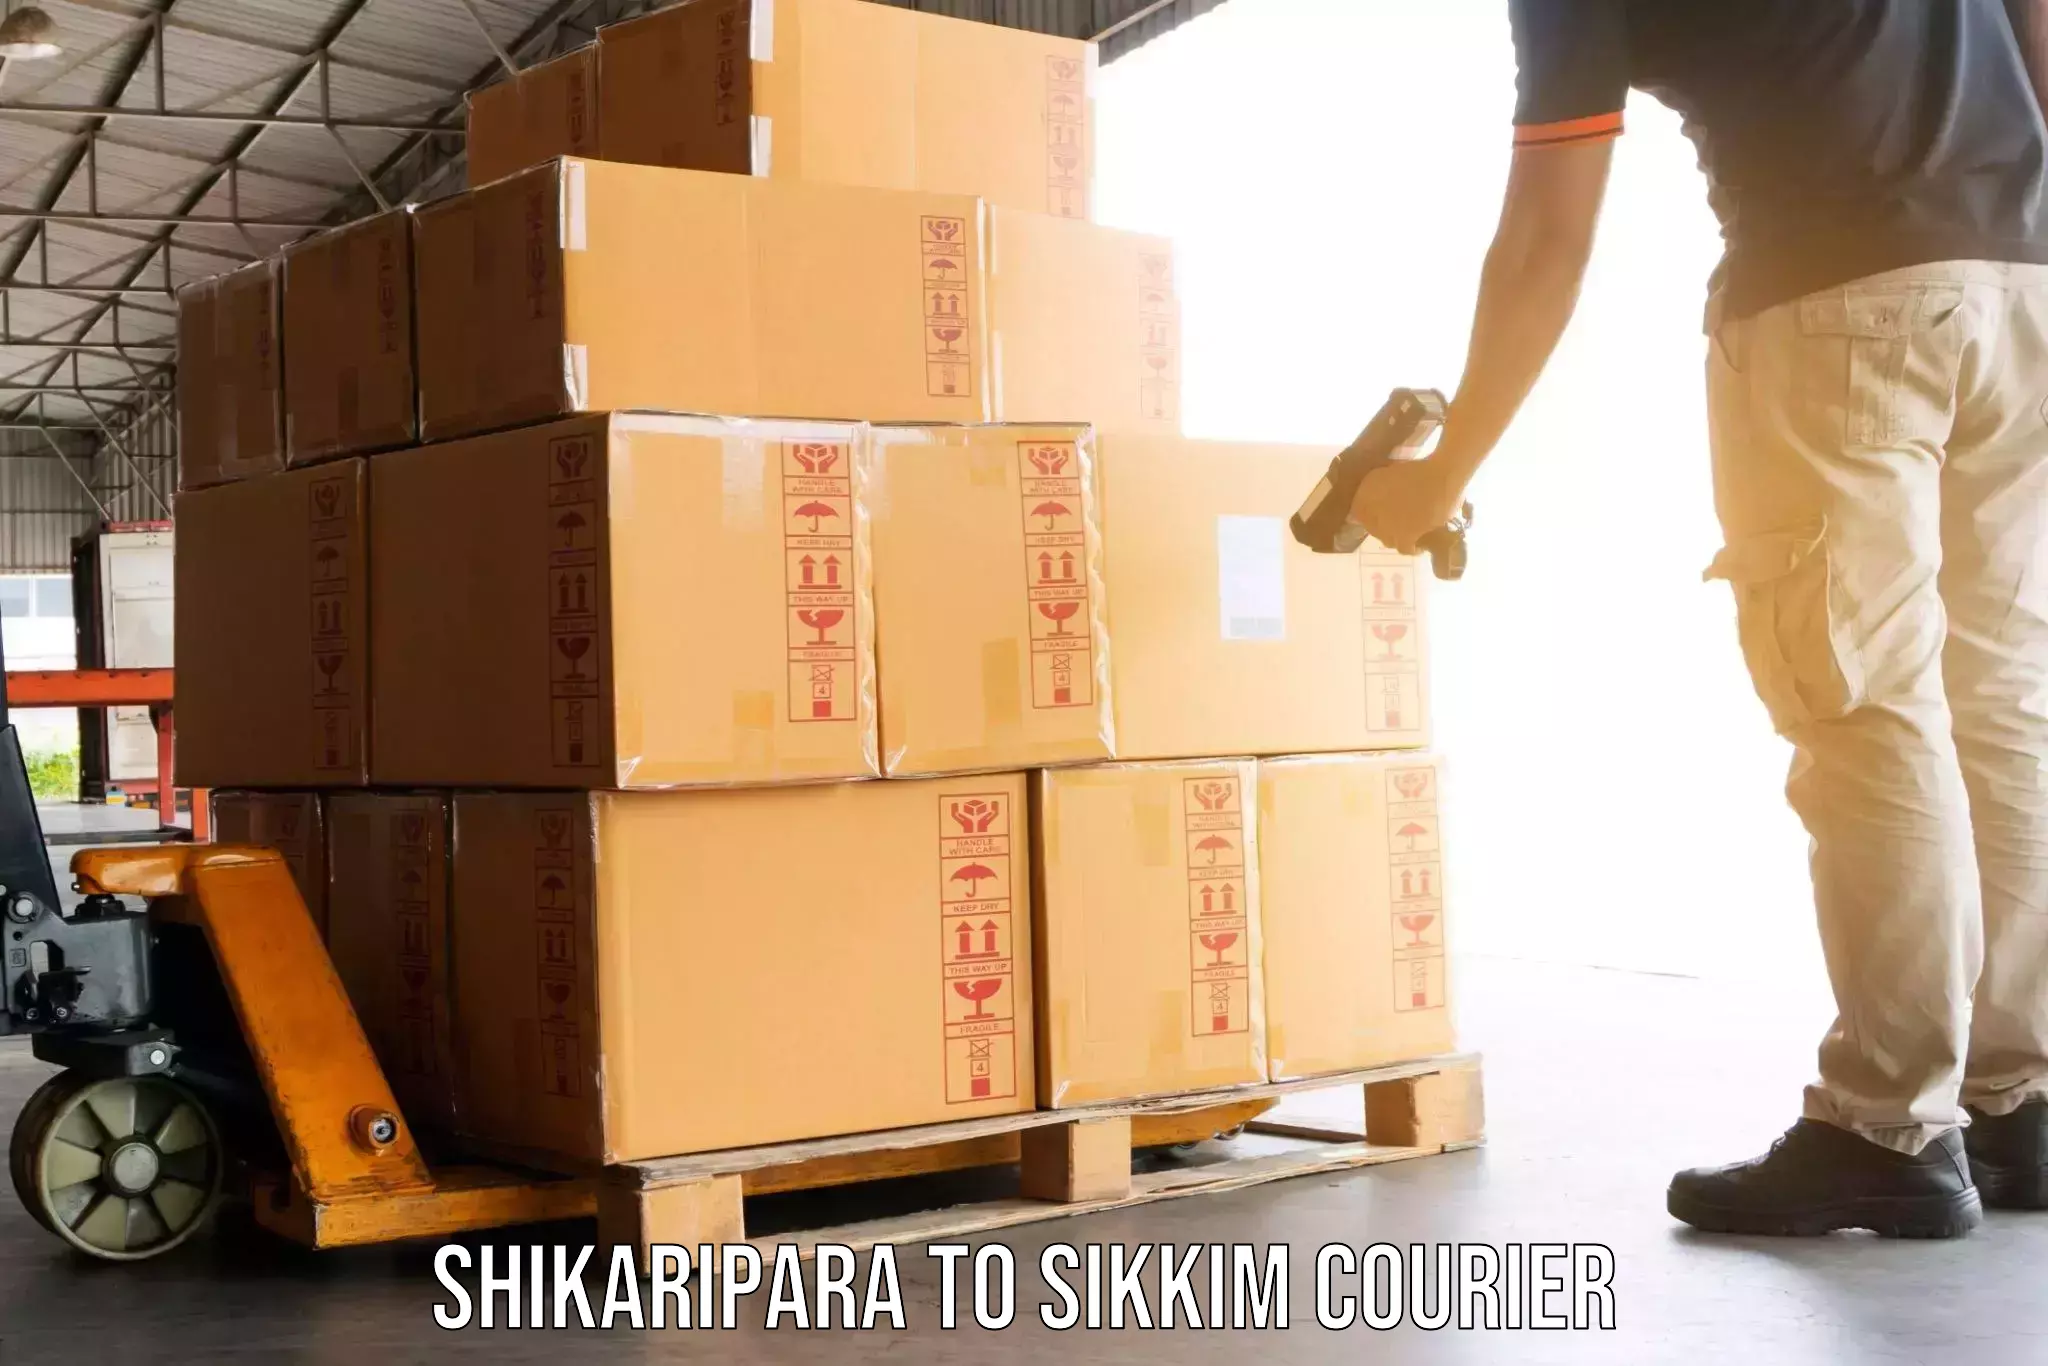 Local household movers Shikaripara to East Sikkim